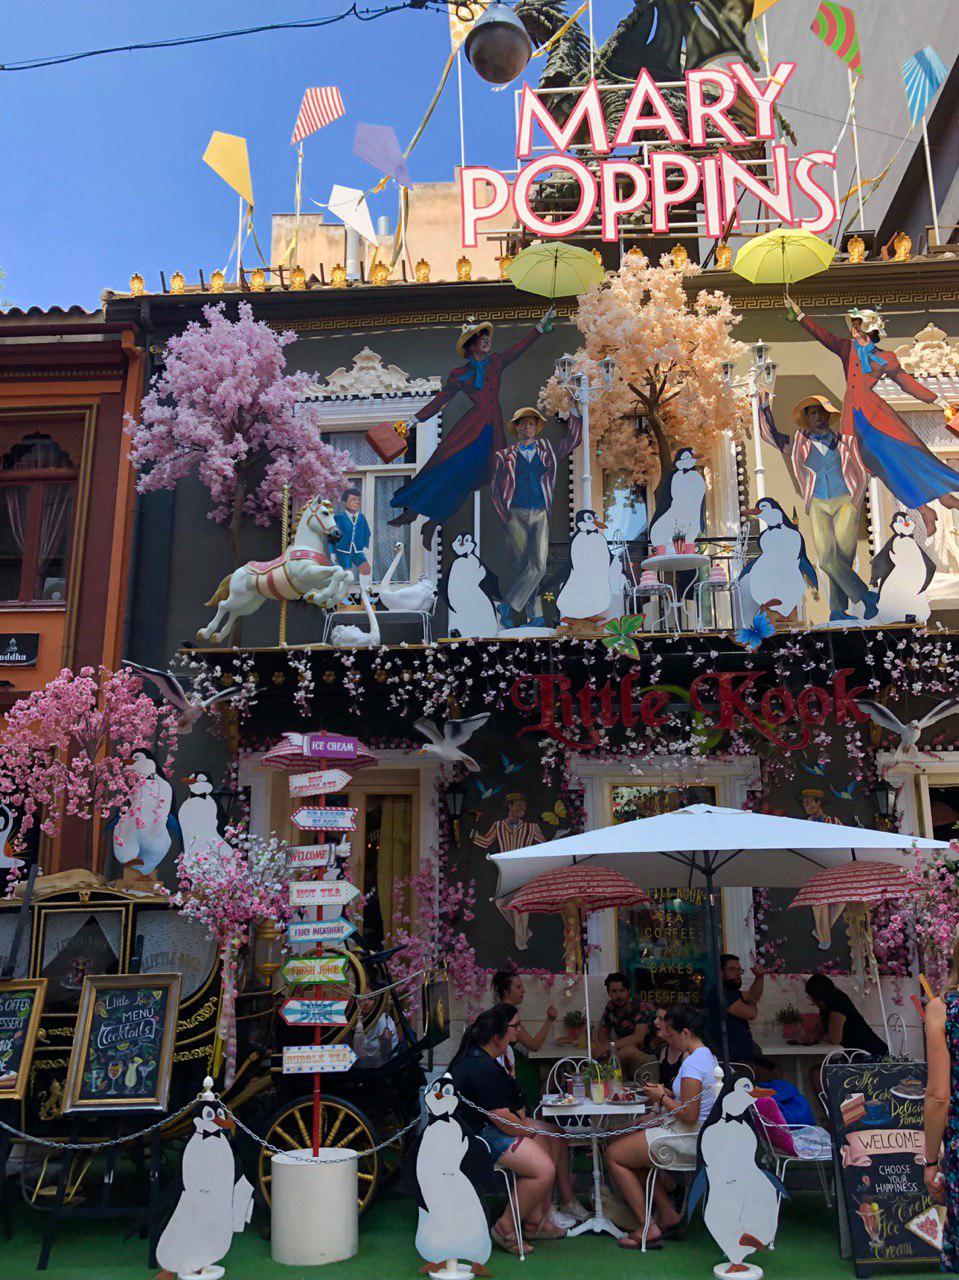 کافه محلی یونان با دکور داستان مشهور mary poppins